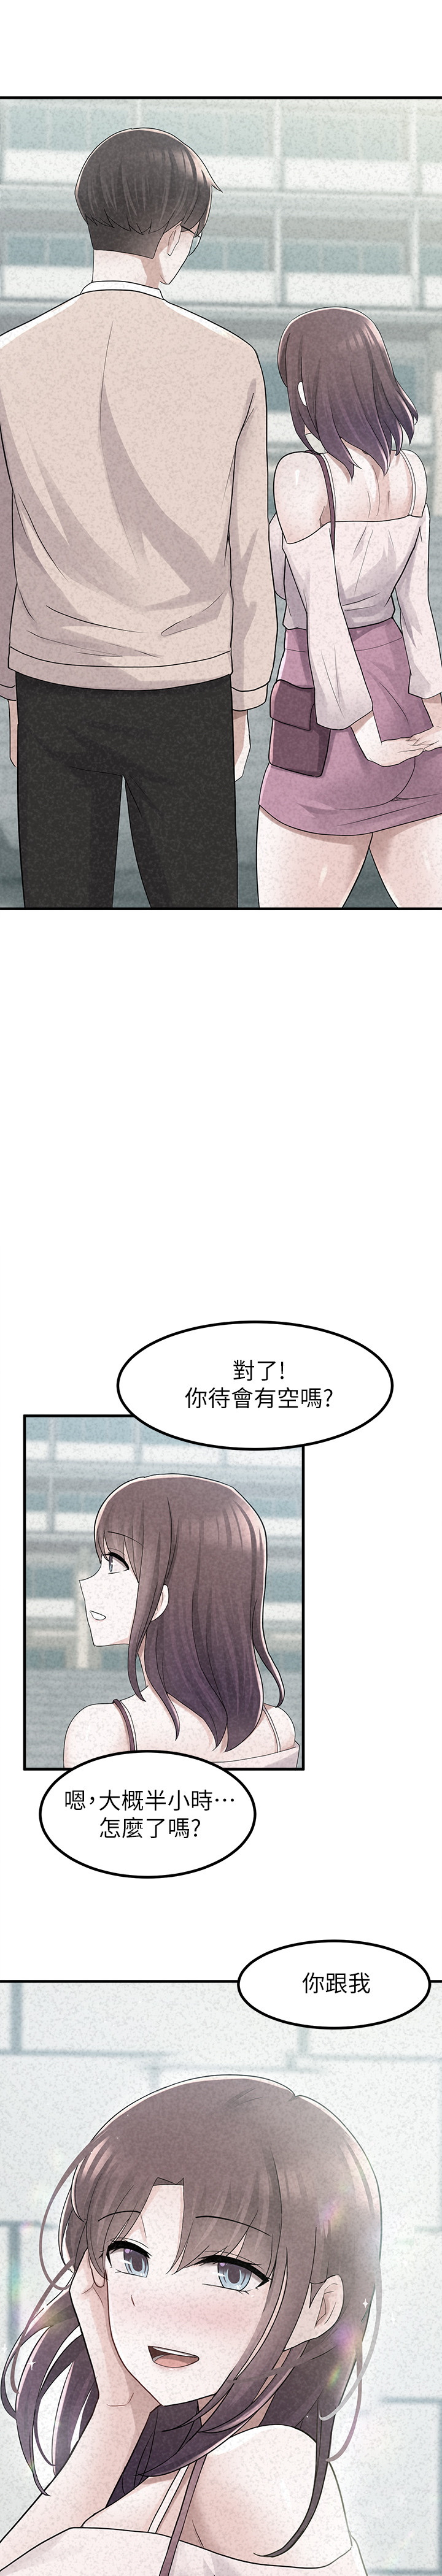 废柴逃脱  第13话 漫画图片1.jpg